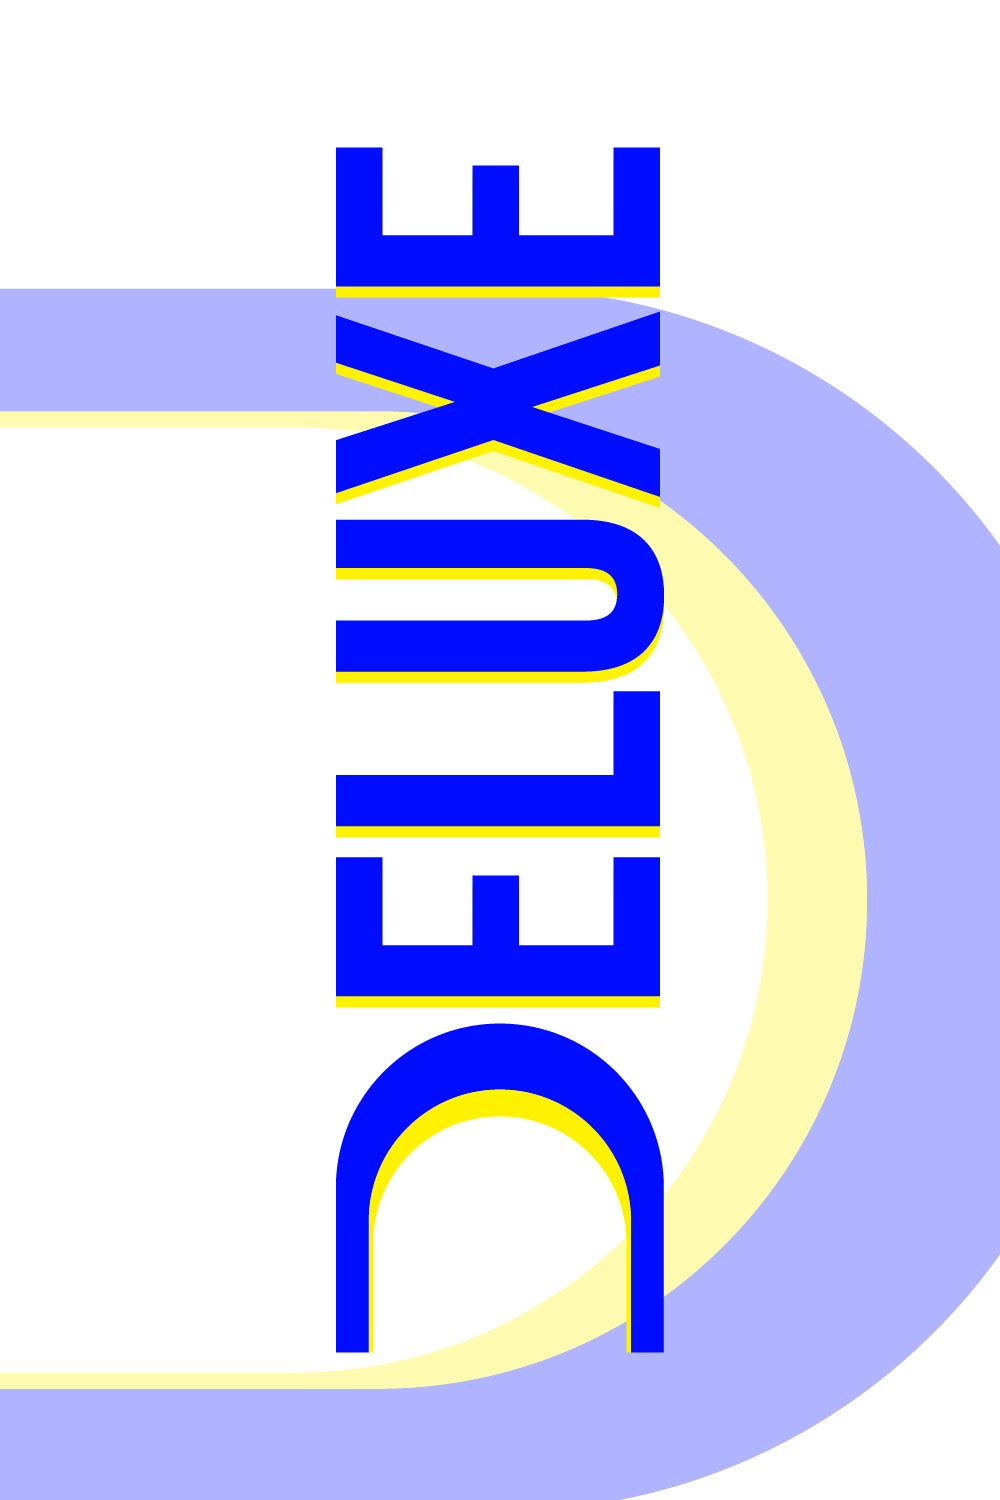 Deluxe Letter D Logo pinterest image.